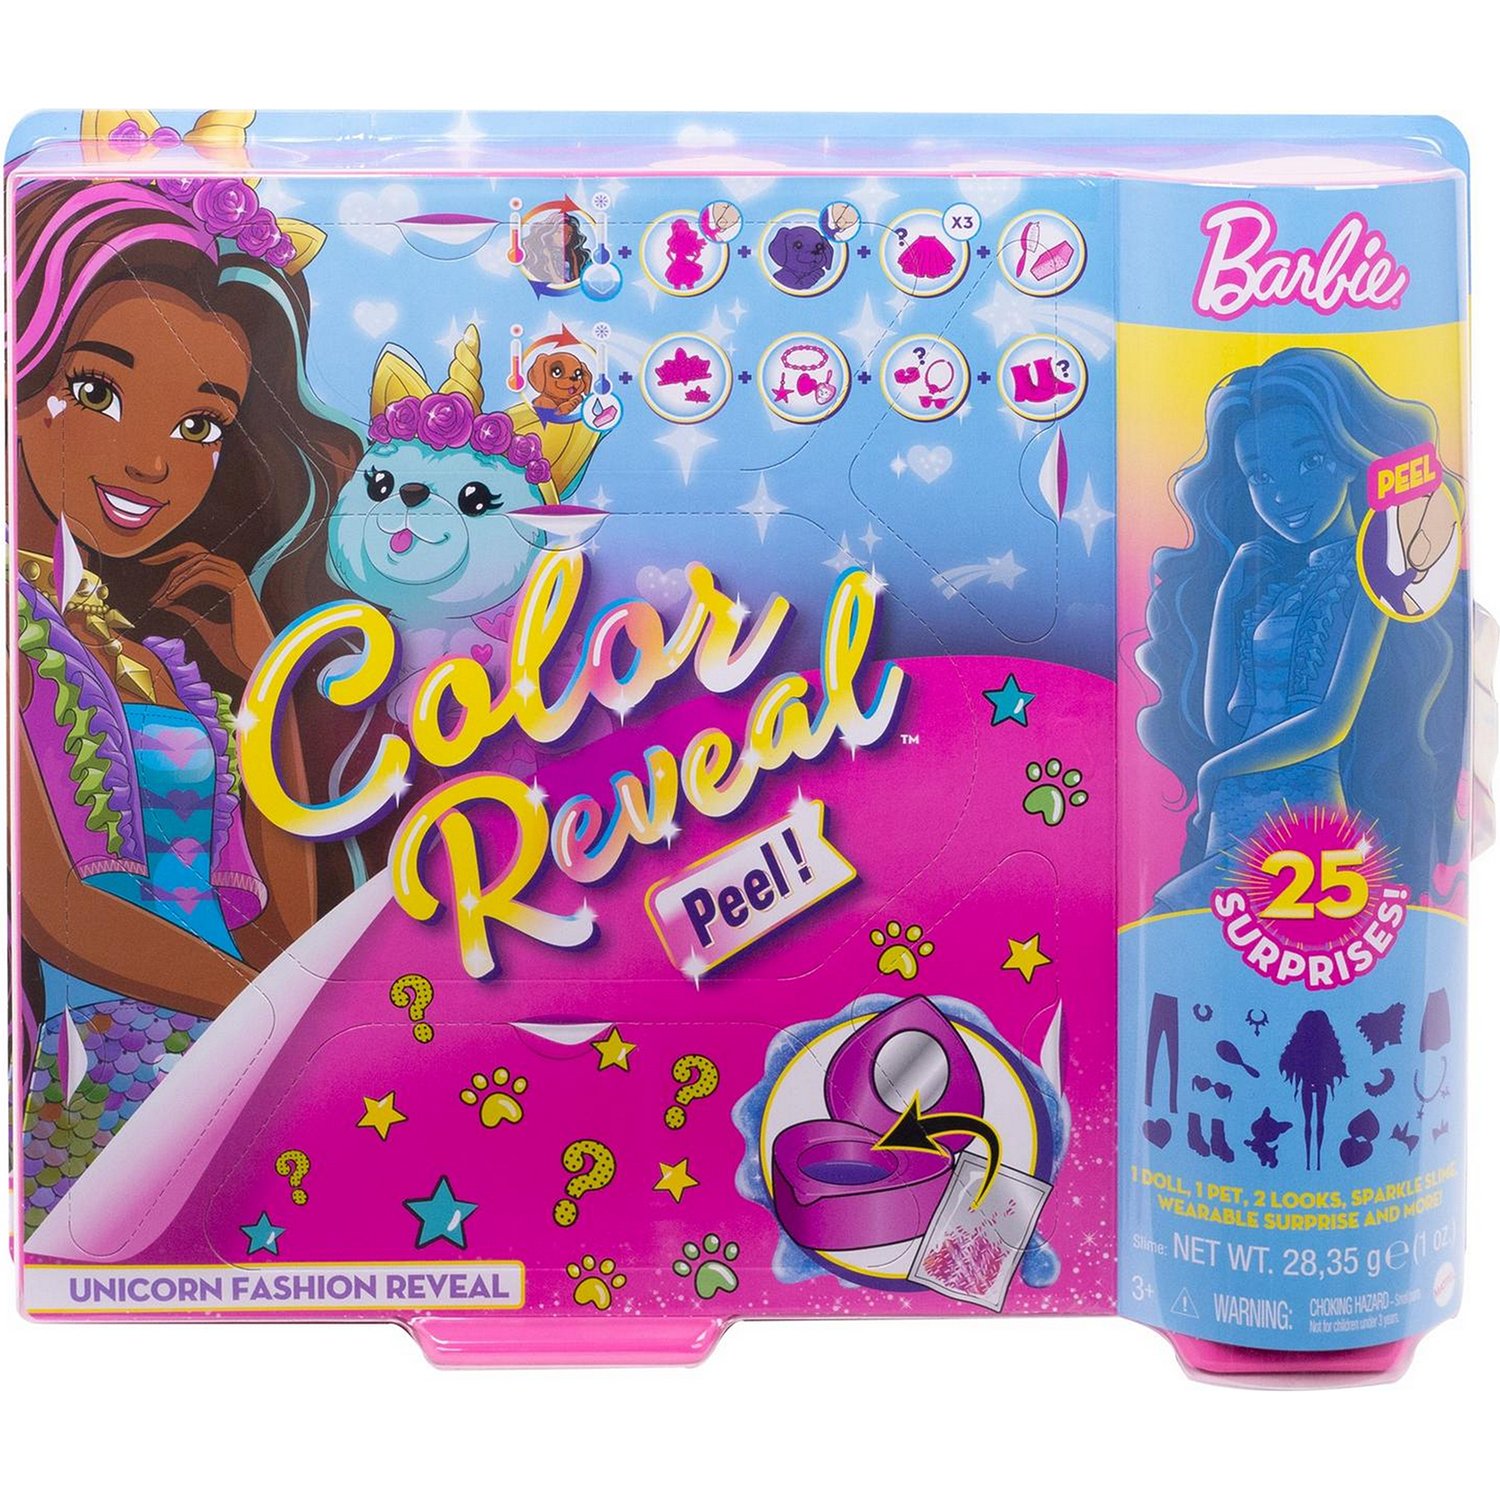 Кукла Barbie Color Reveal с сюрпризами внутри упаковки, GXV95